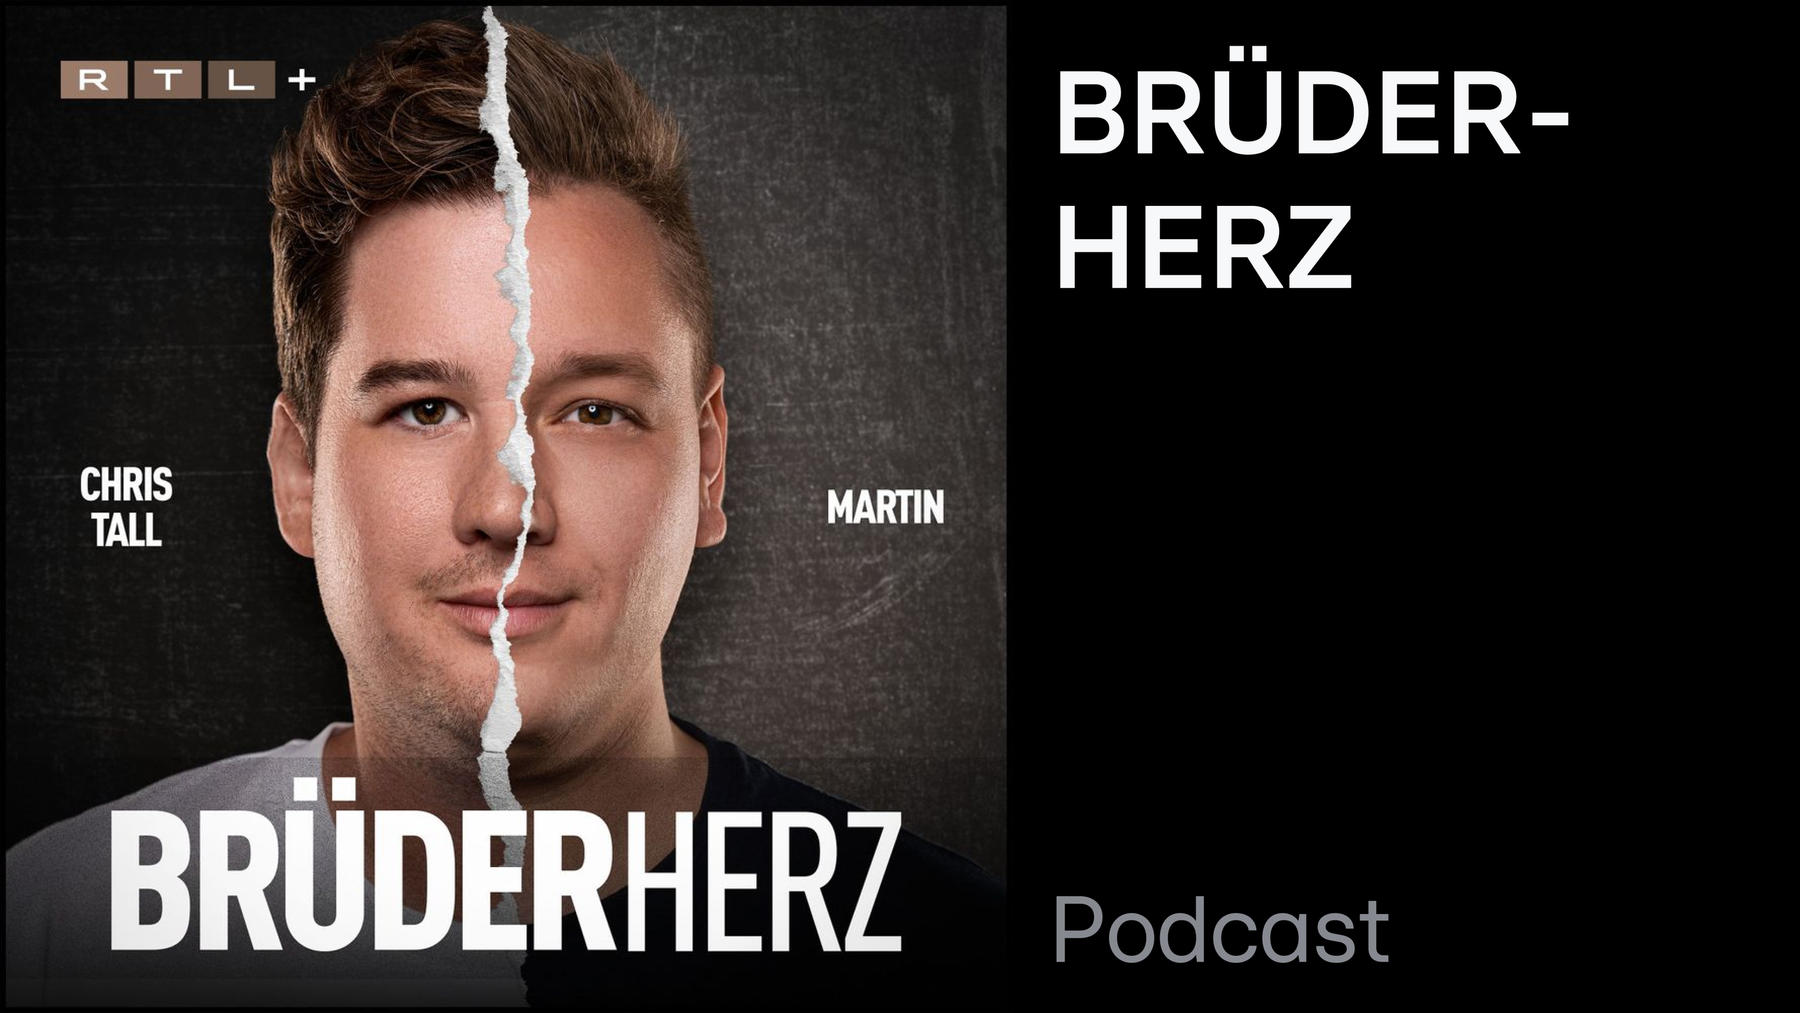 Podcast: Brüderherz